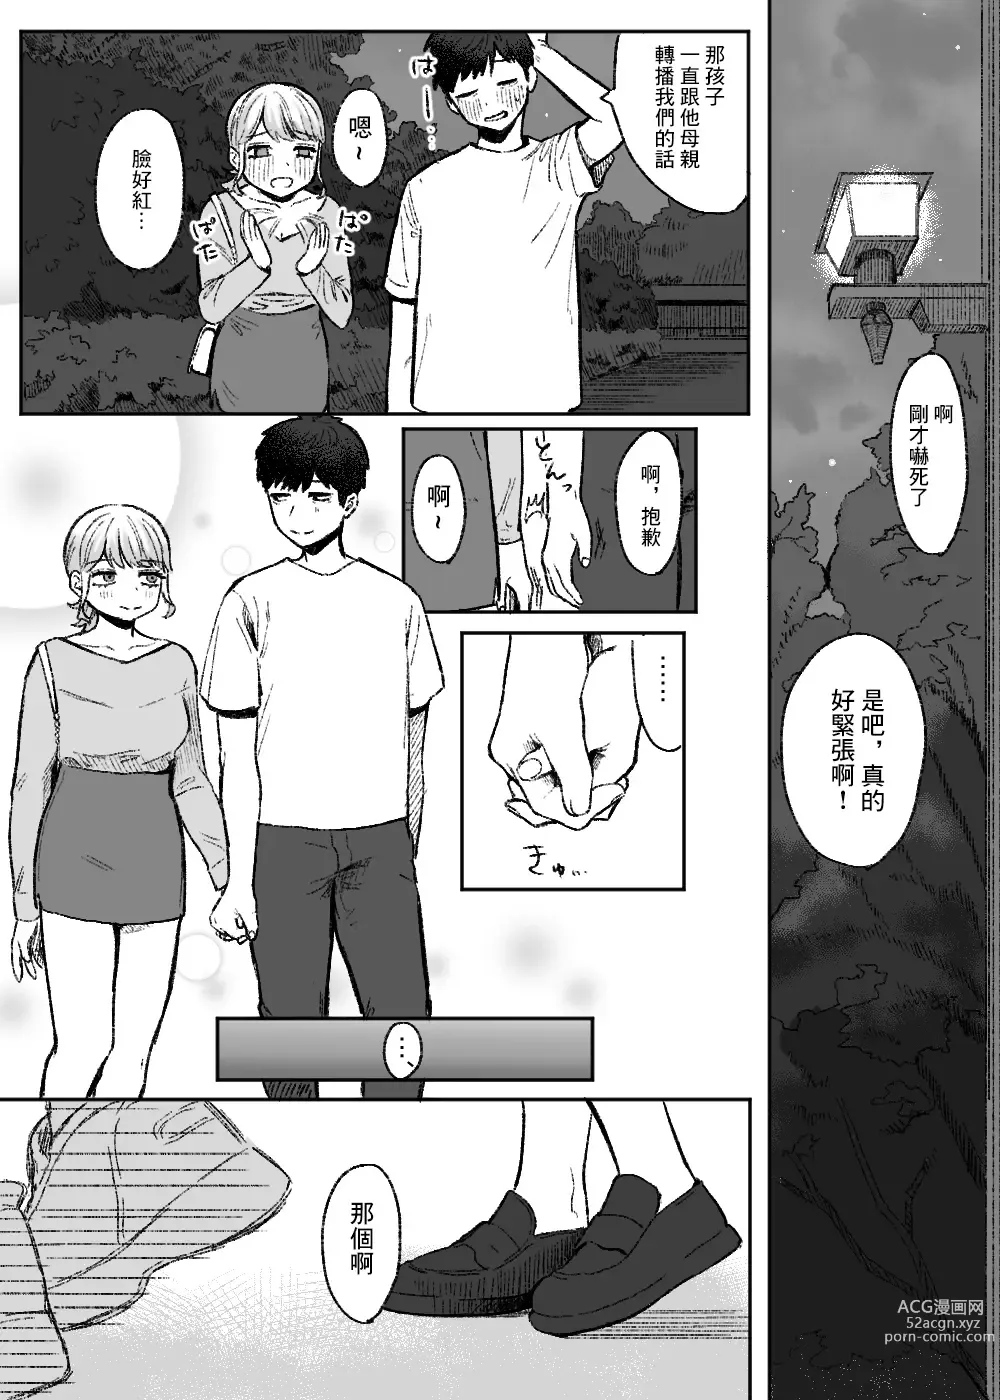 Page 11 of doujinshi Amari mo no Doushi no,